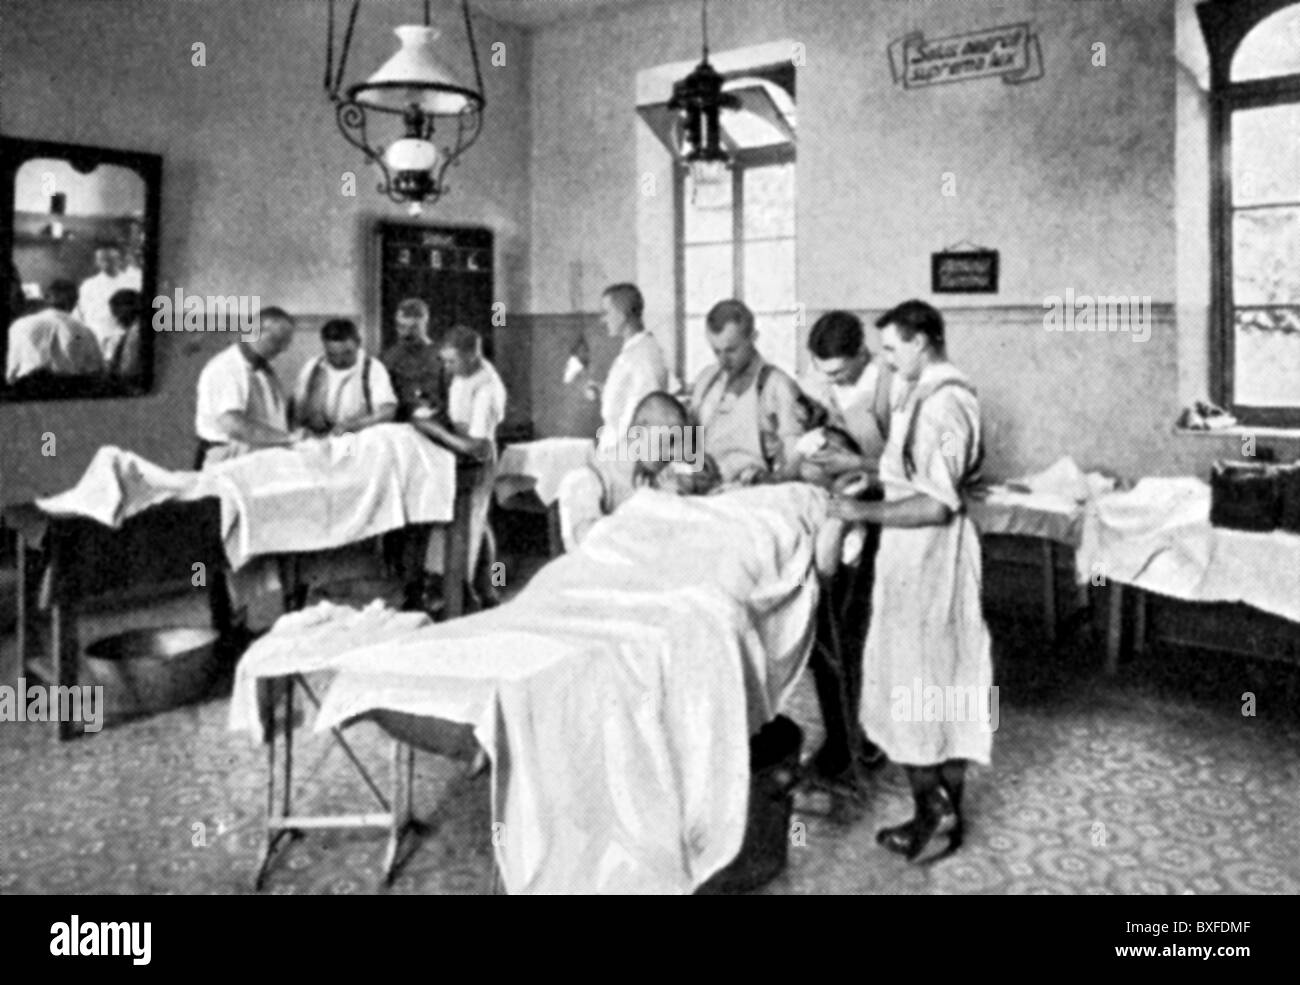 Evénements, première Guerre mondiale / WWI, service médical, 1914 - 1918, droits additionnels-Clearences-non disponible Banque D'Images